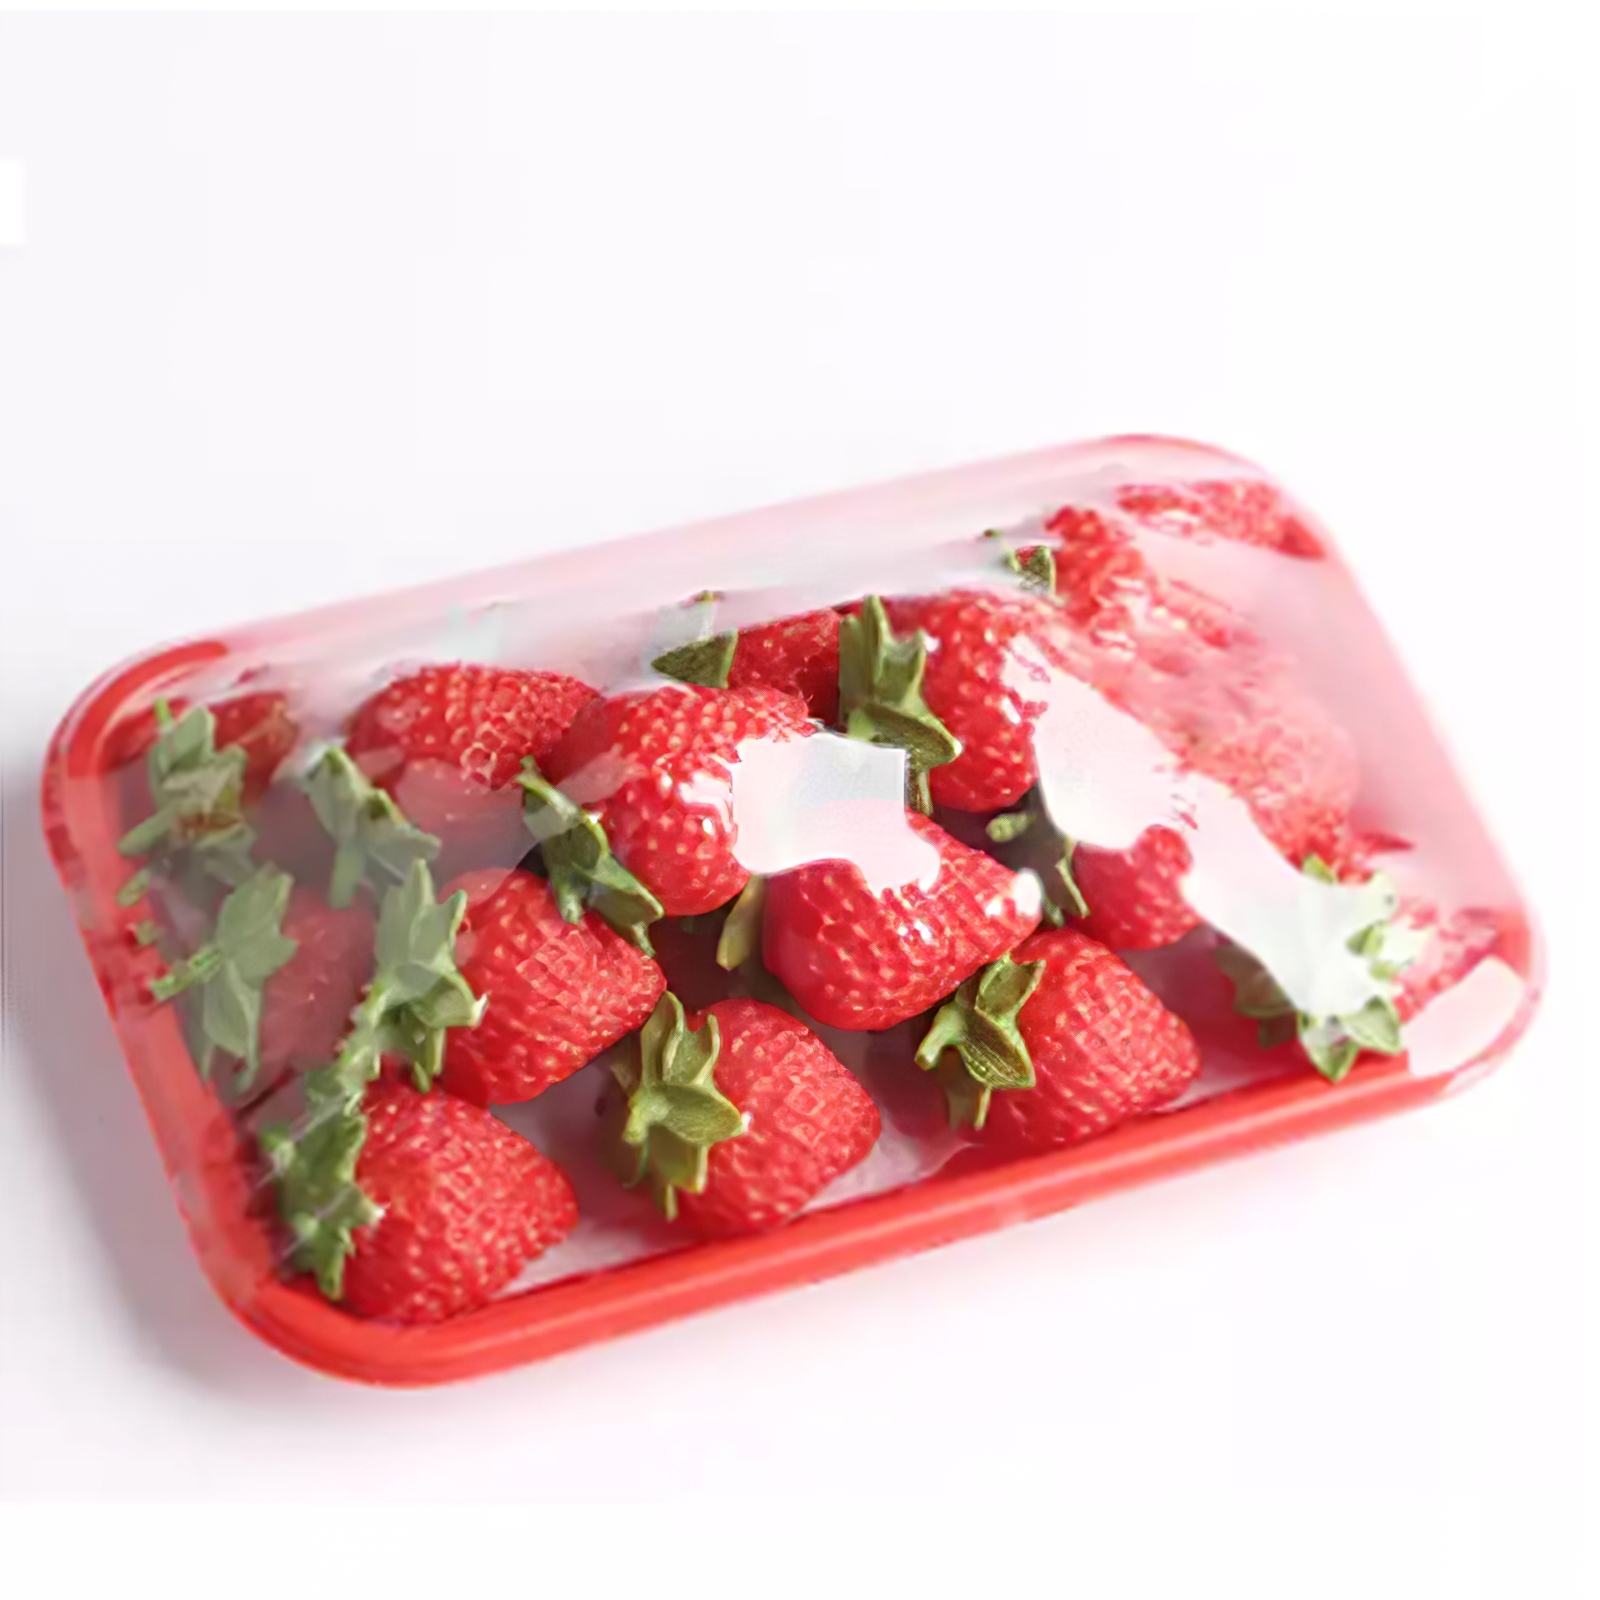 Envase de amorodo Blister Envase transparente Caixa de froitas biodegradables de plástico